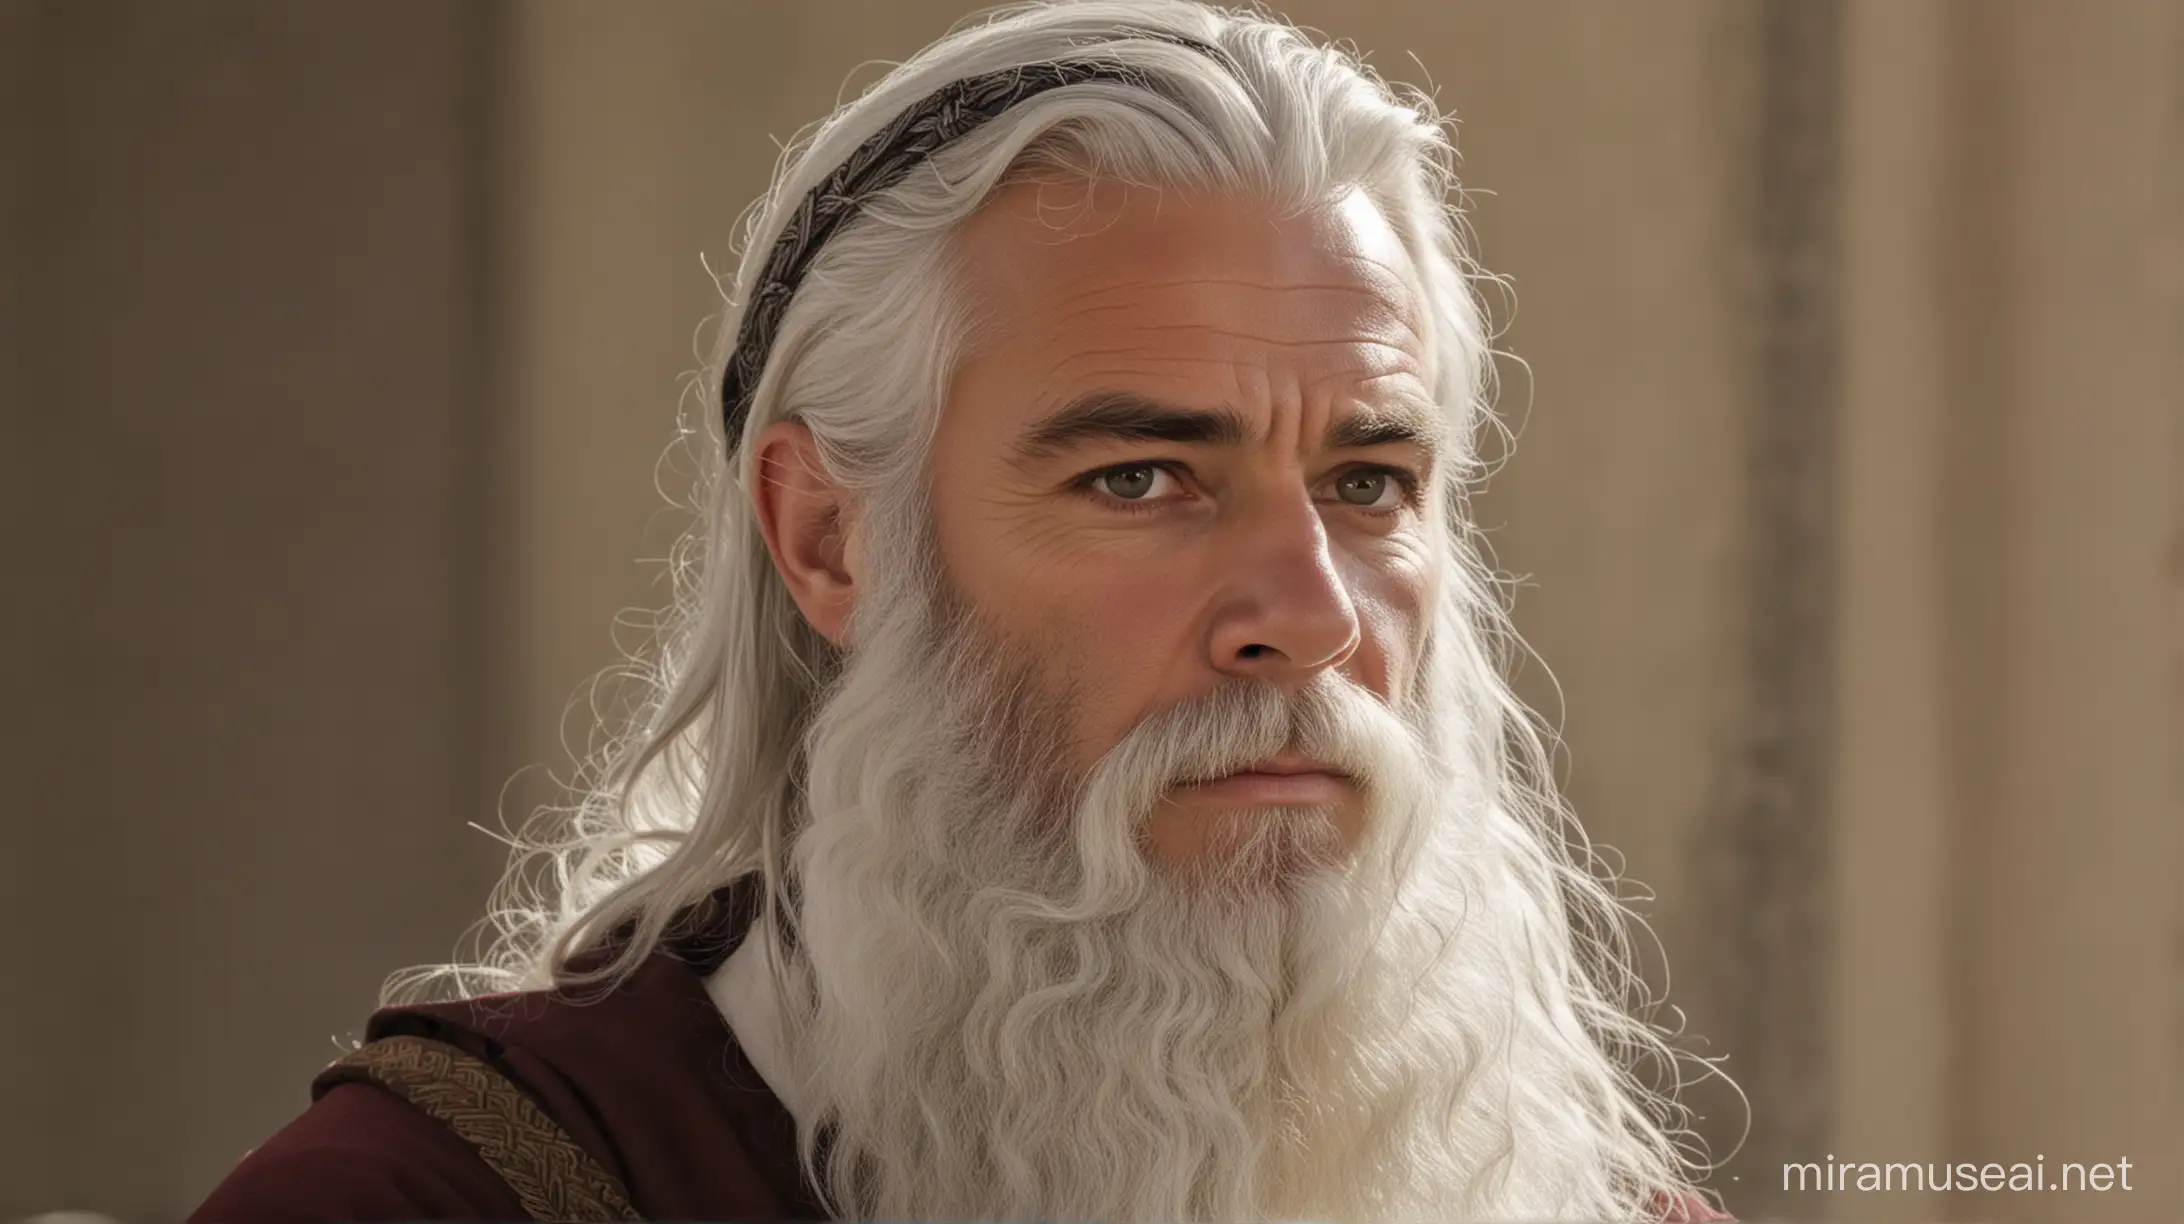 Elias da biblia, olhando fixamente, com barba branca 
